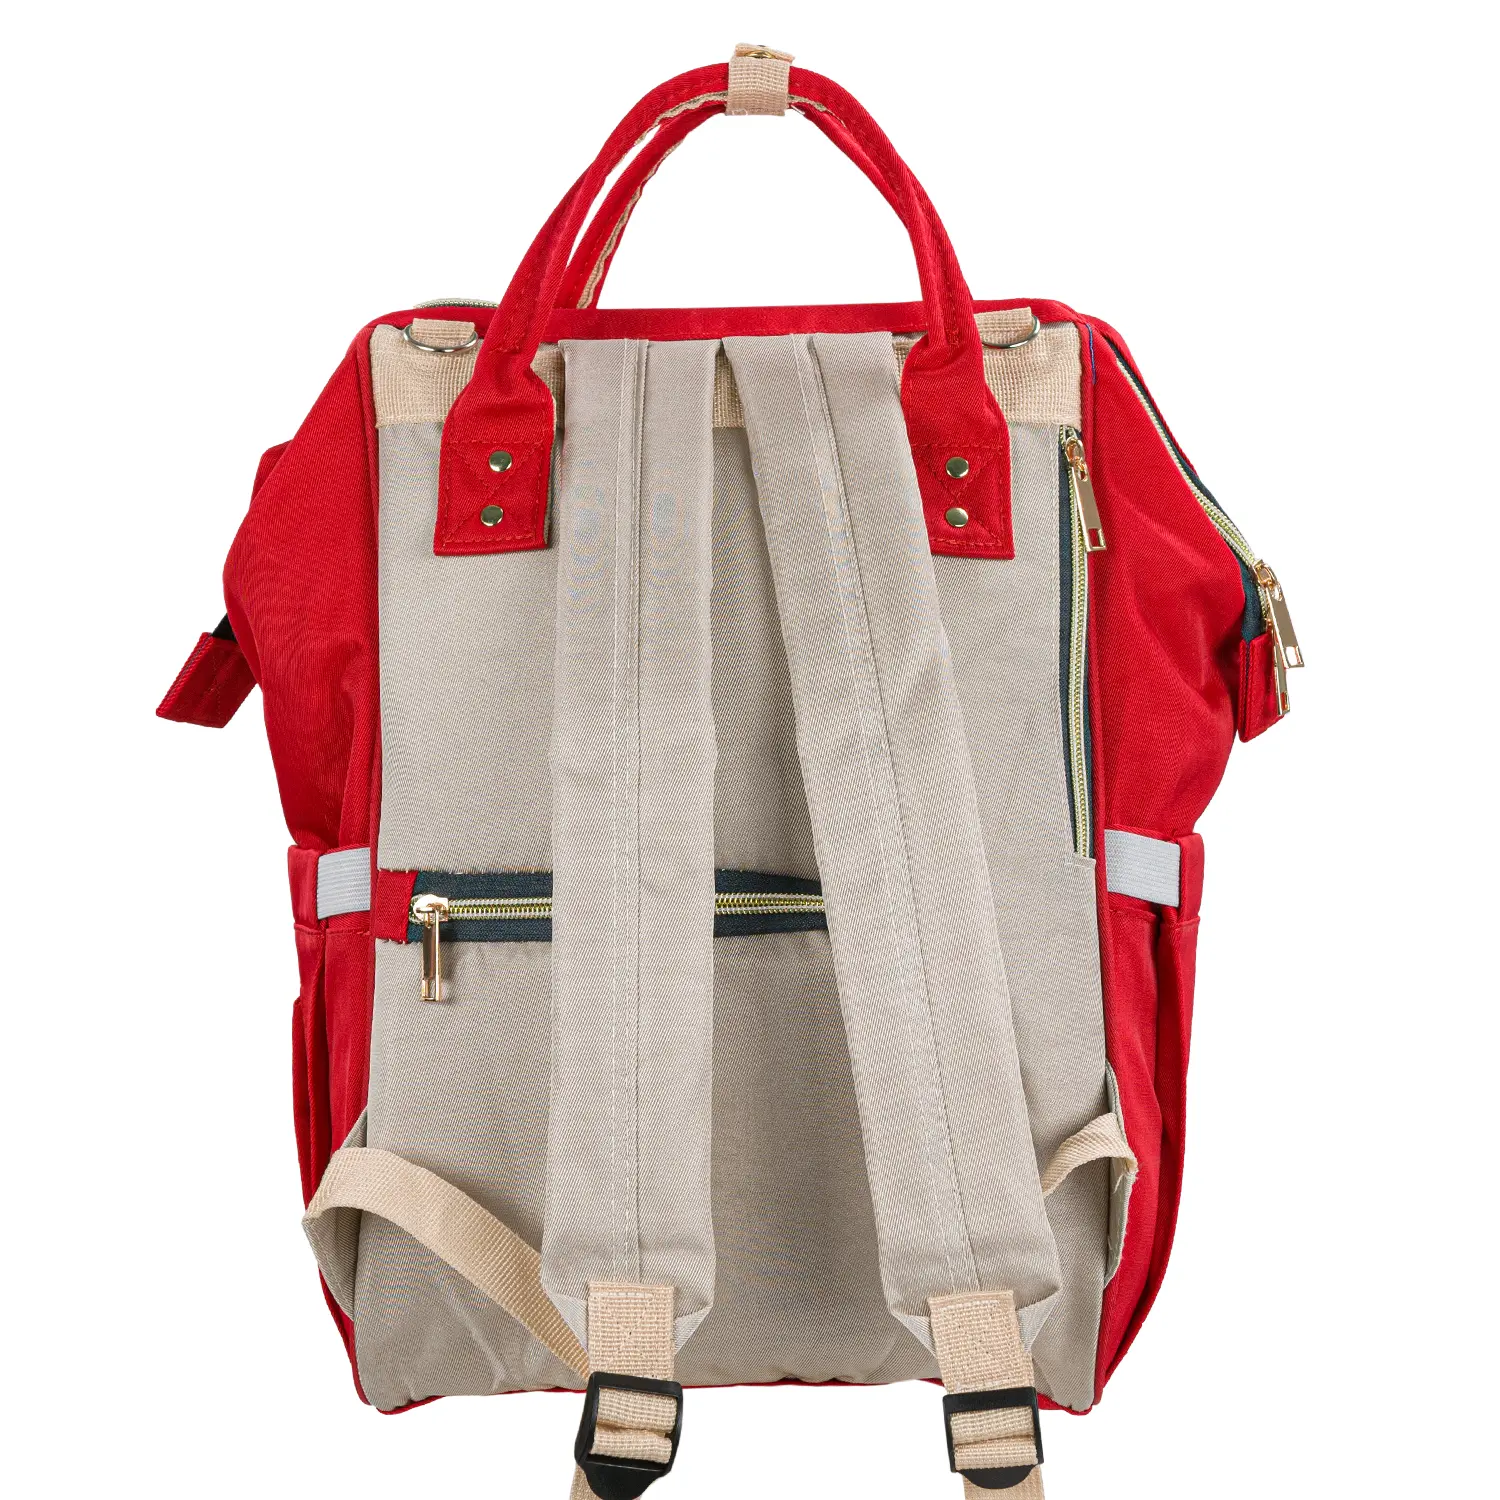 Pelenkázó hátizsák, hátitáska piros-szürke színben (ST-MB-JA1911-118-RED-GRAY) pelenkázótáska